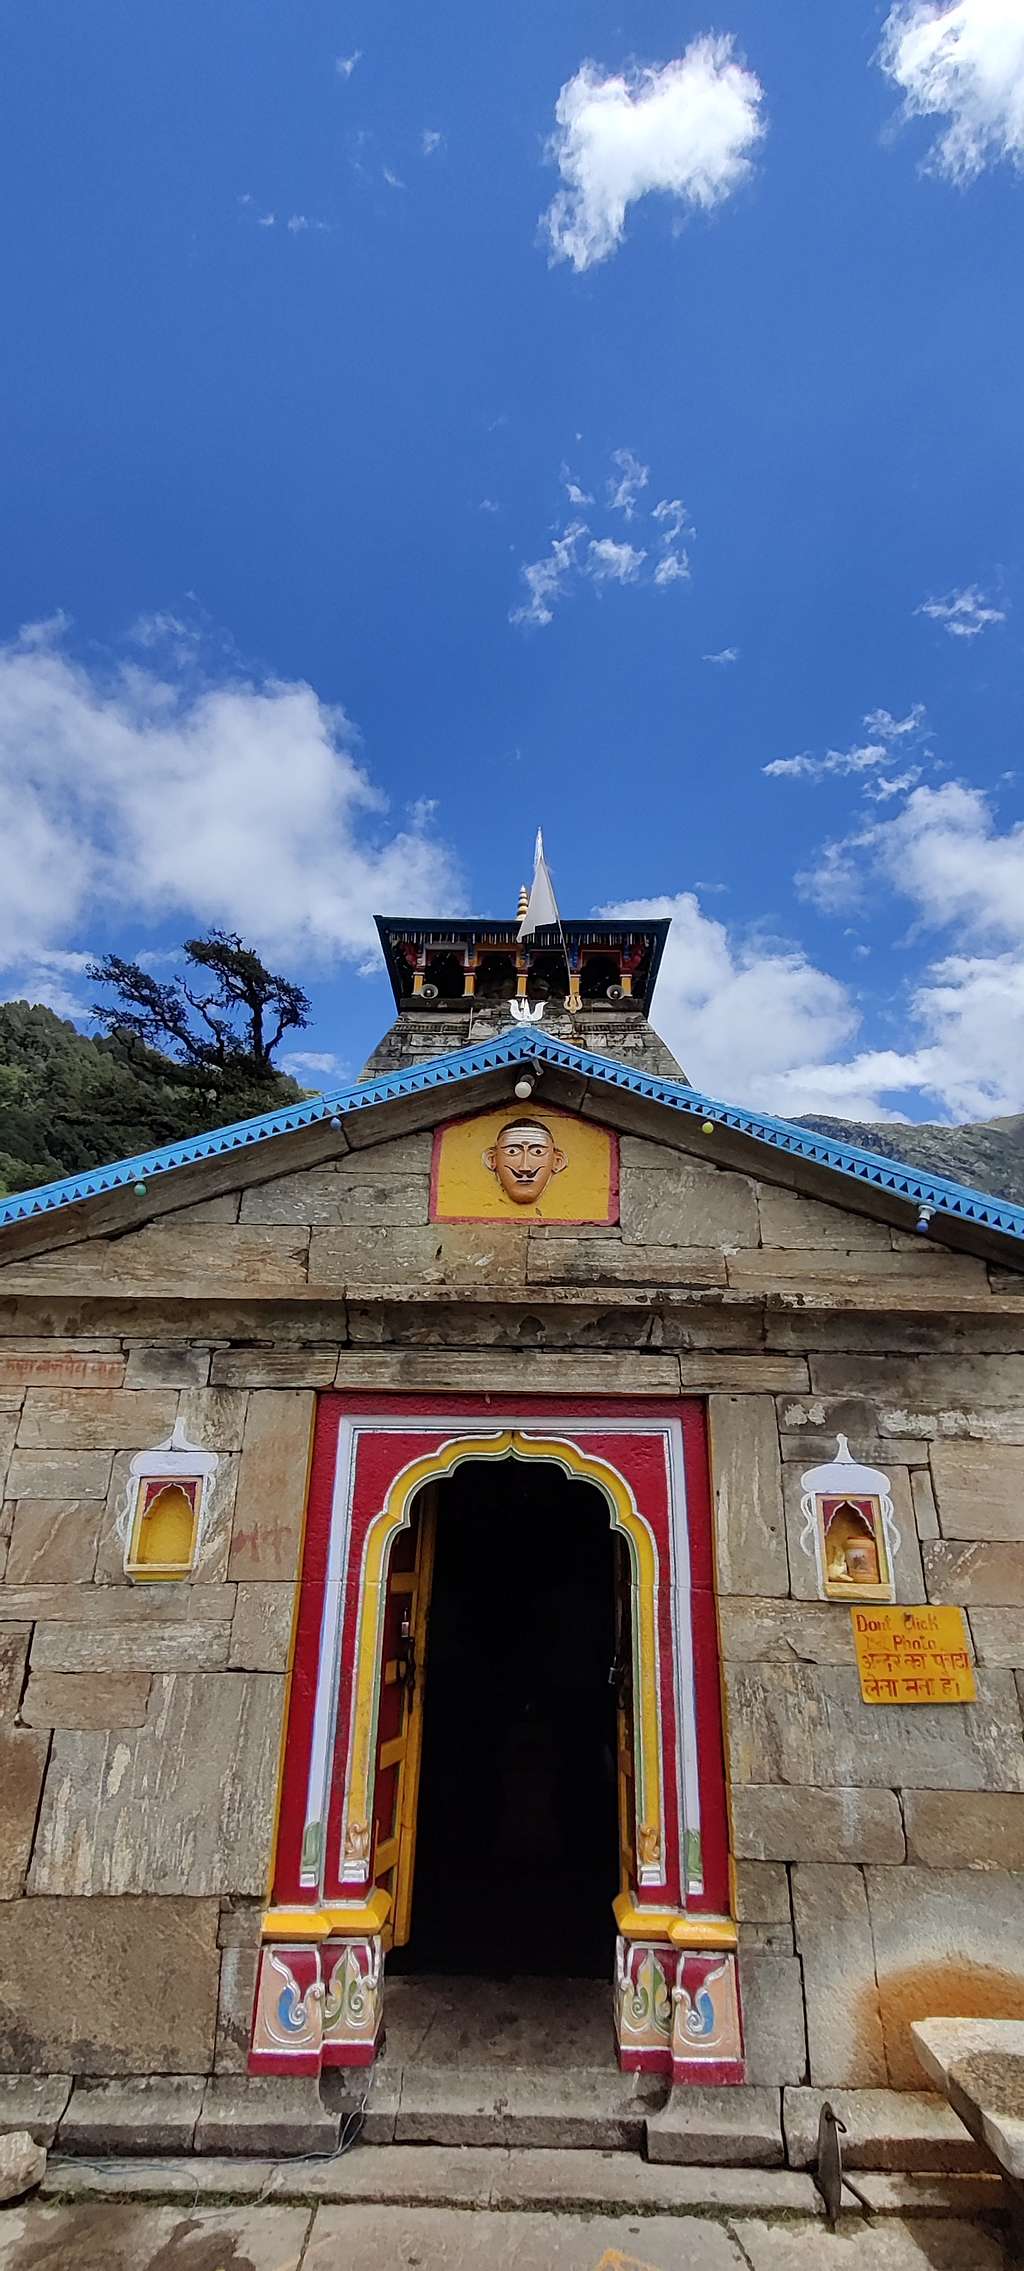 MadhyaMaheshwar temple up close